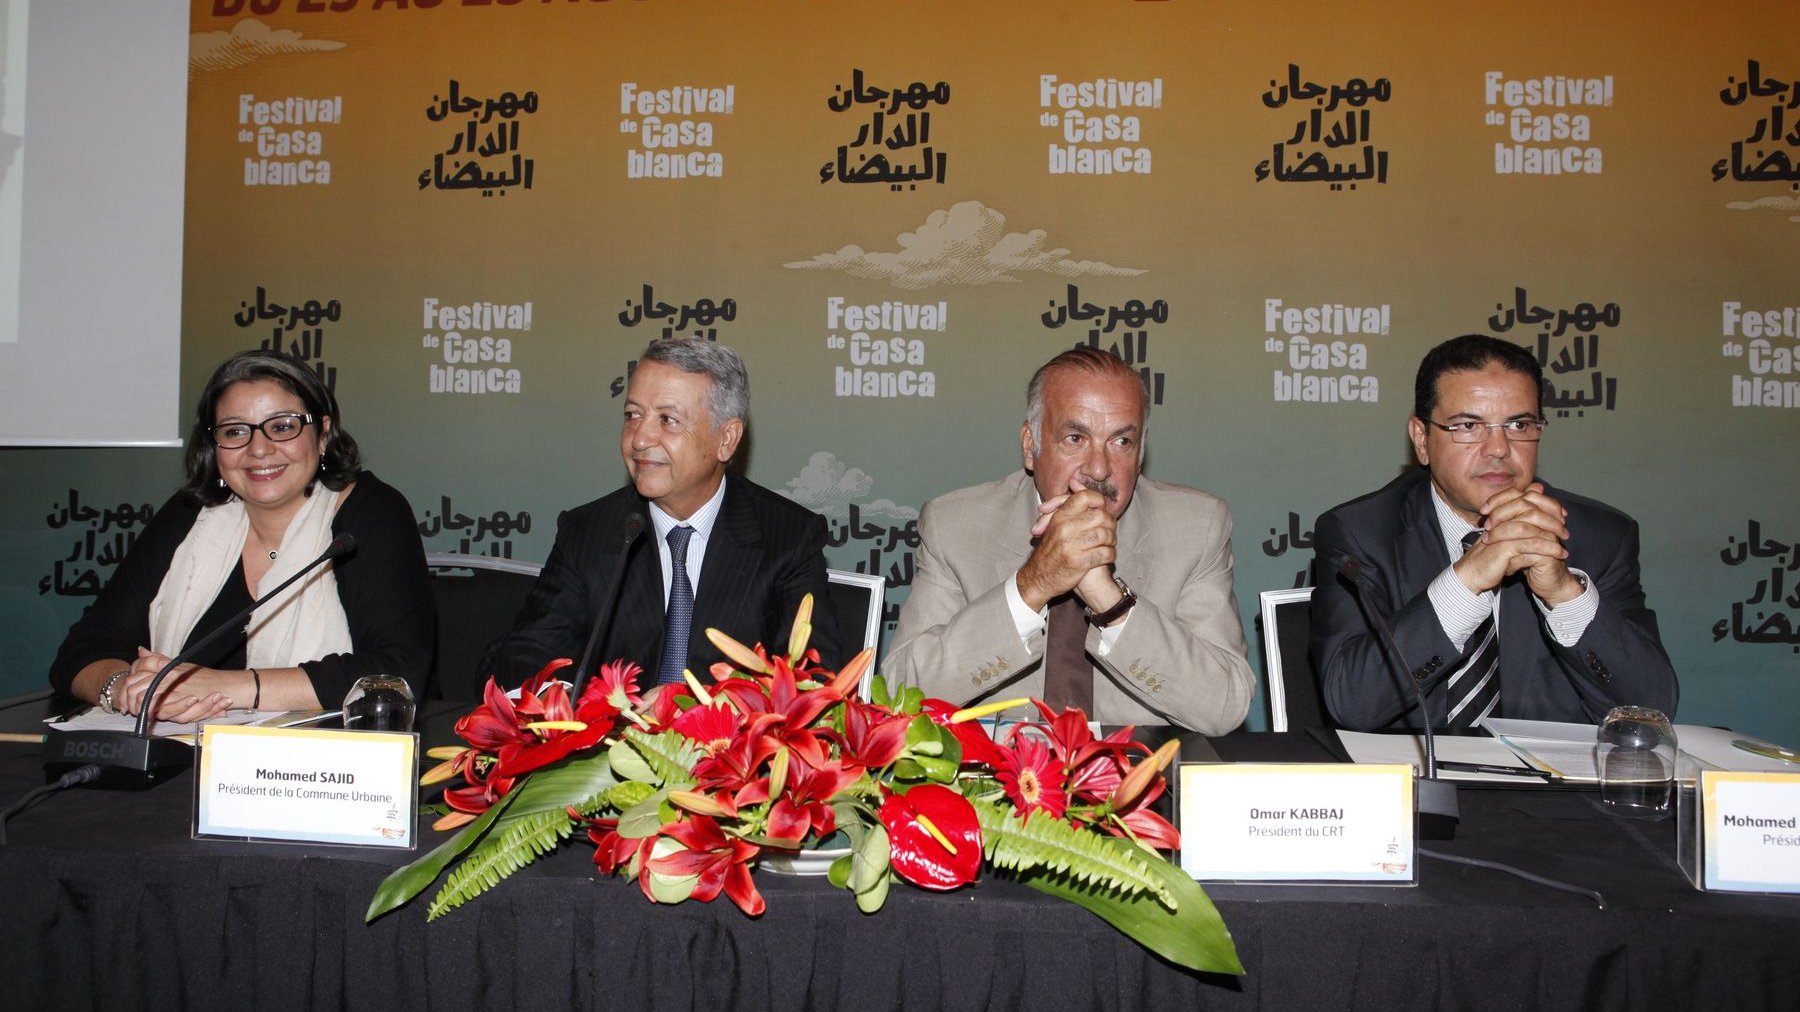 عمدة الدار البيضاء محمد ساجد يسلط الضوء على برنامج مهرجان الدار البيضاء
